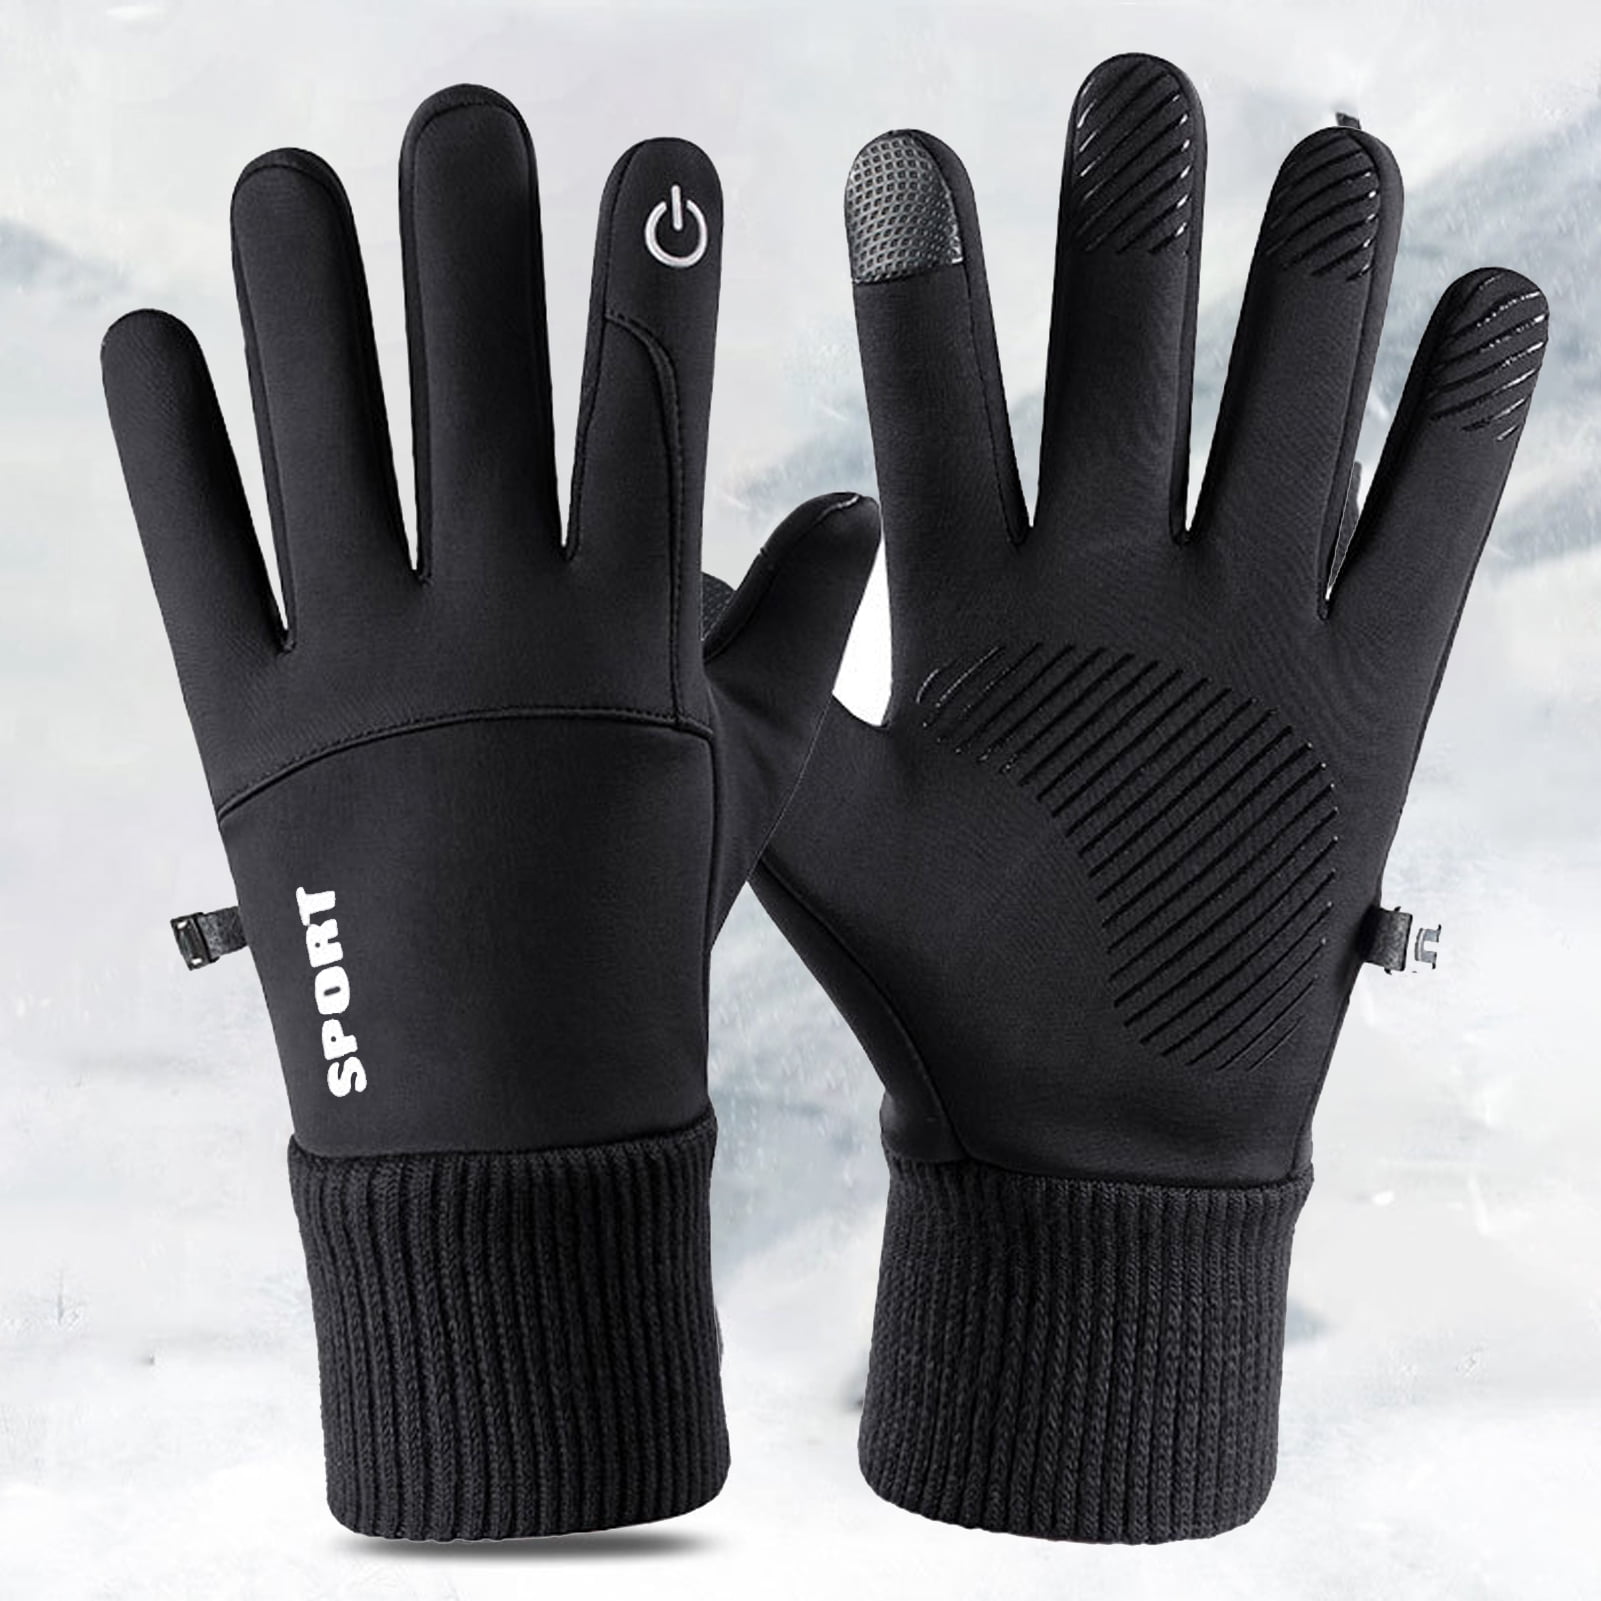 Wmoss Work Gloves Touch Screen Flex Grip Winter Gloves Warm Fleece Driving Gloves Windproof Outdoor for Men Women,Black (Small)